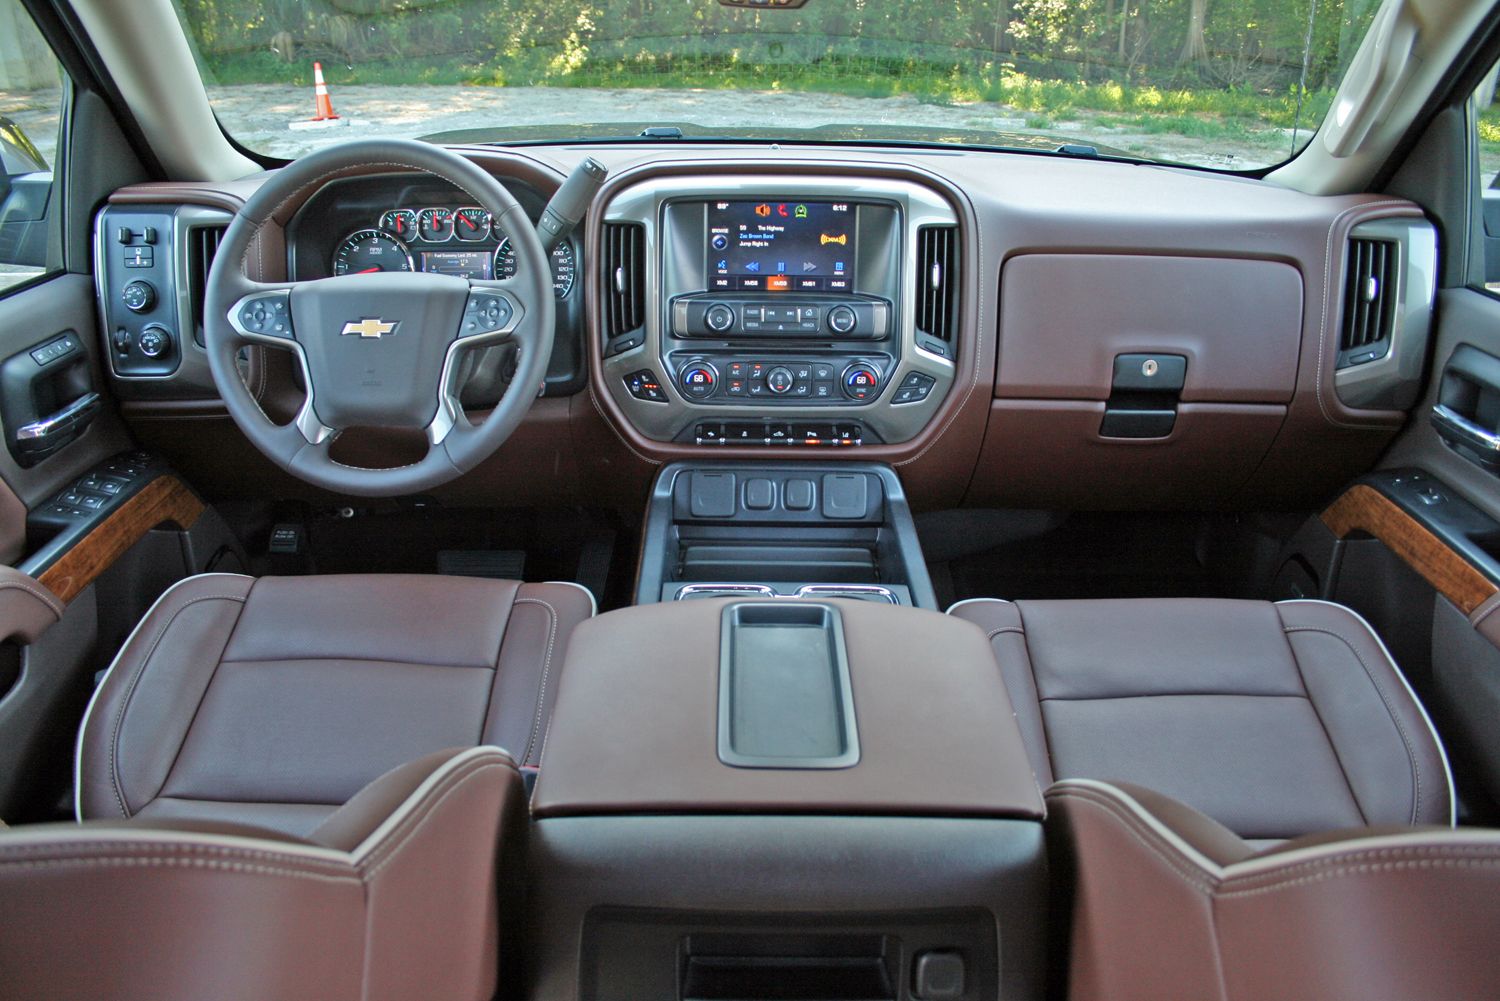 2014 Chevrolet Silverado High Country - Driven